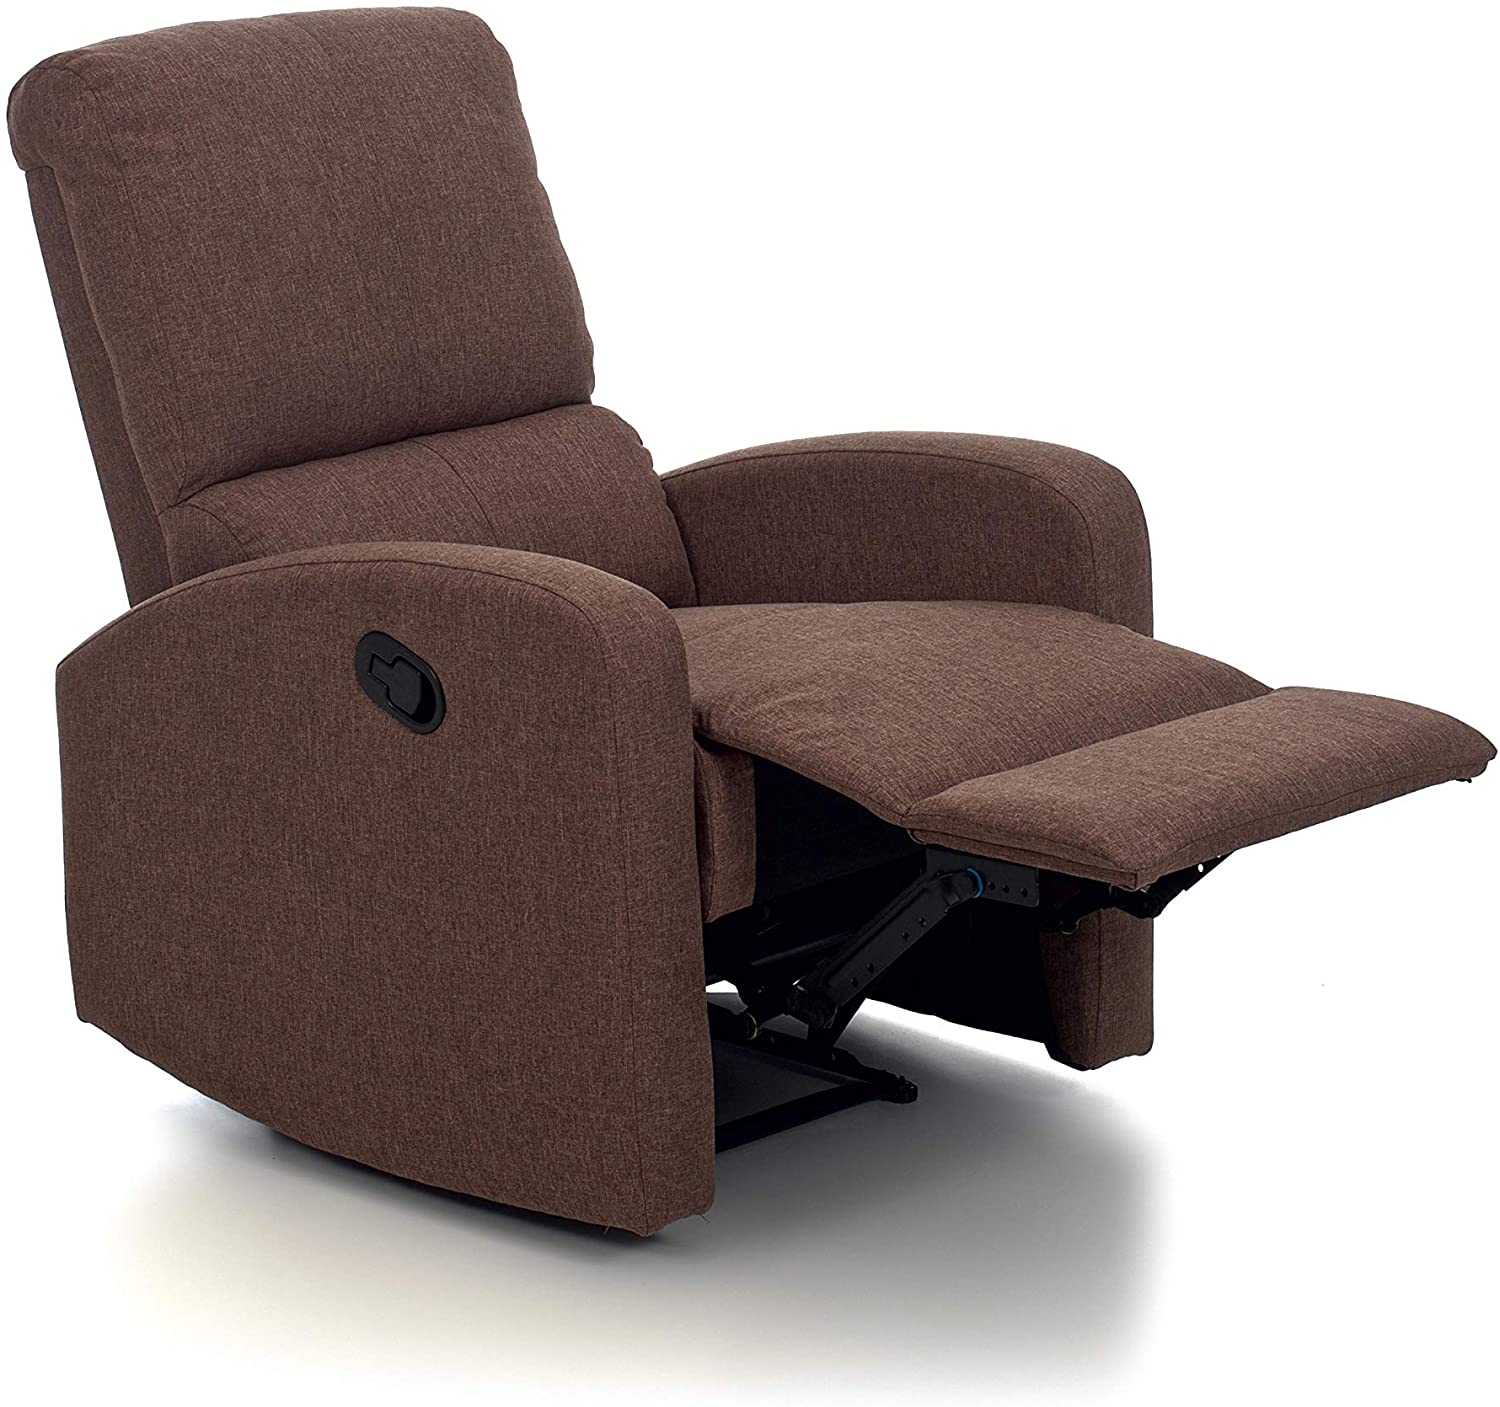 Marvin Poltrona Relax Tessuto Salotto con Poggiapiedi Reclinabile Prolunga sedia Imbottita 3 posizioni Letto Brown, Manuale 